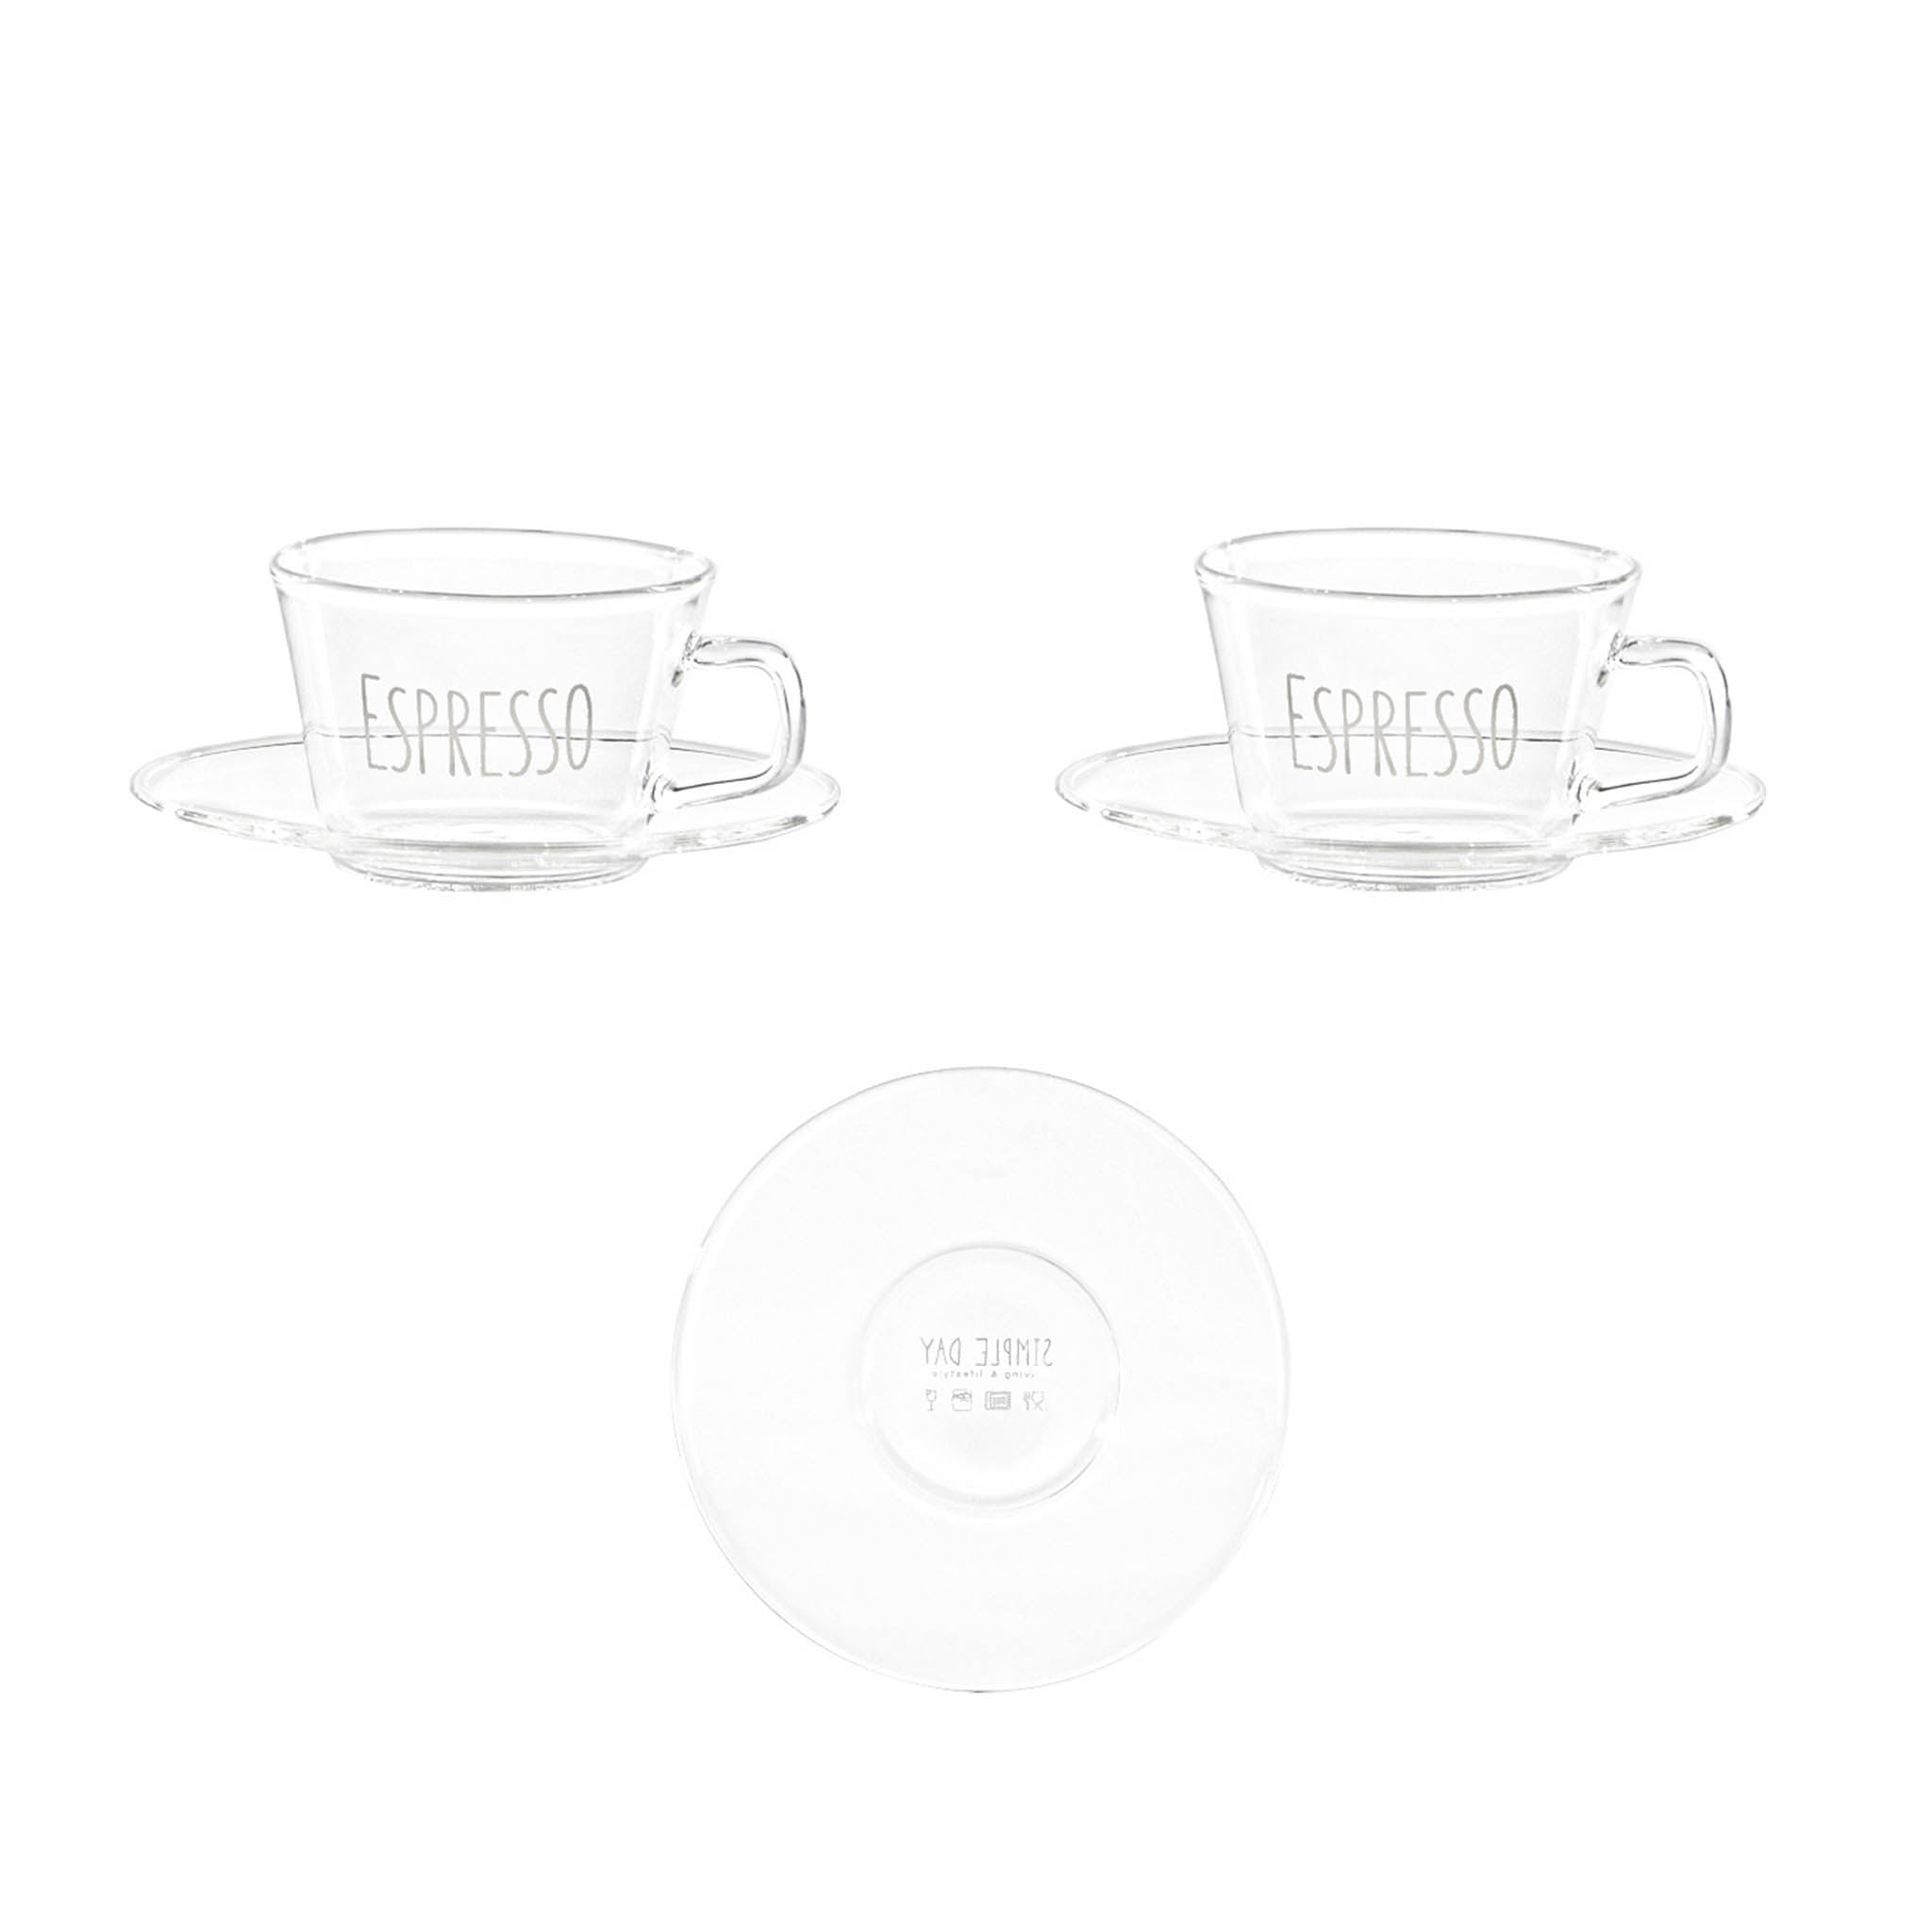 Set of 2 espresso cups with saucer Espresso